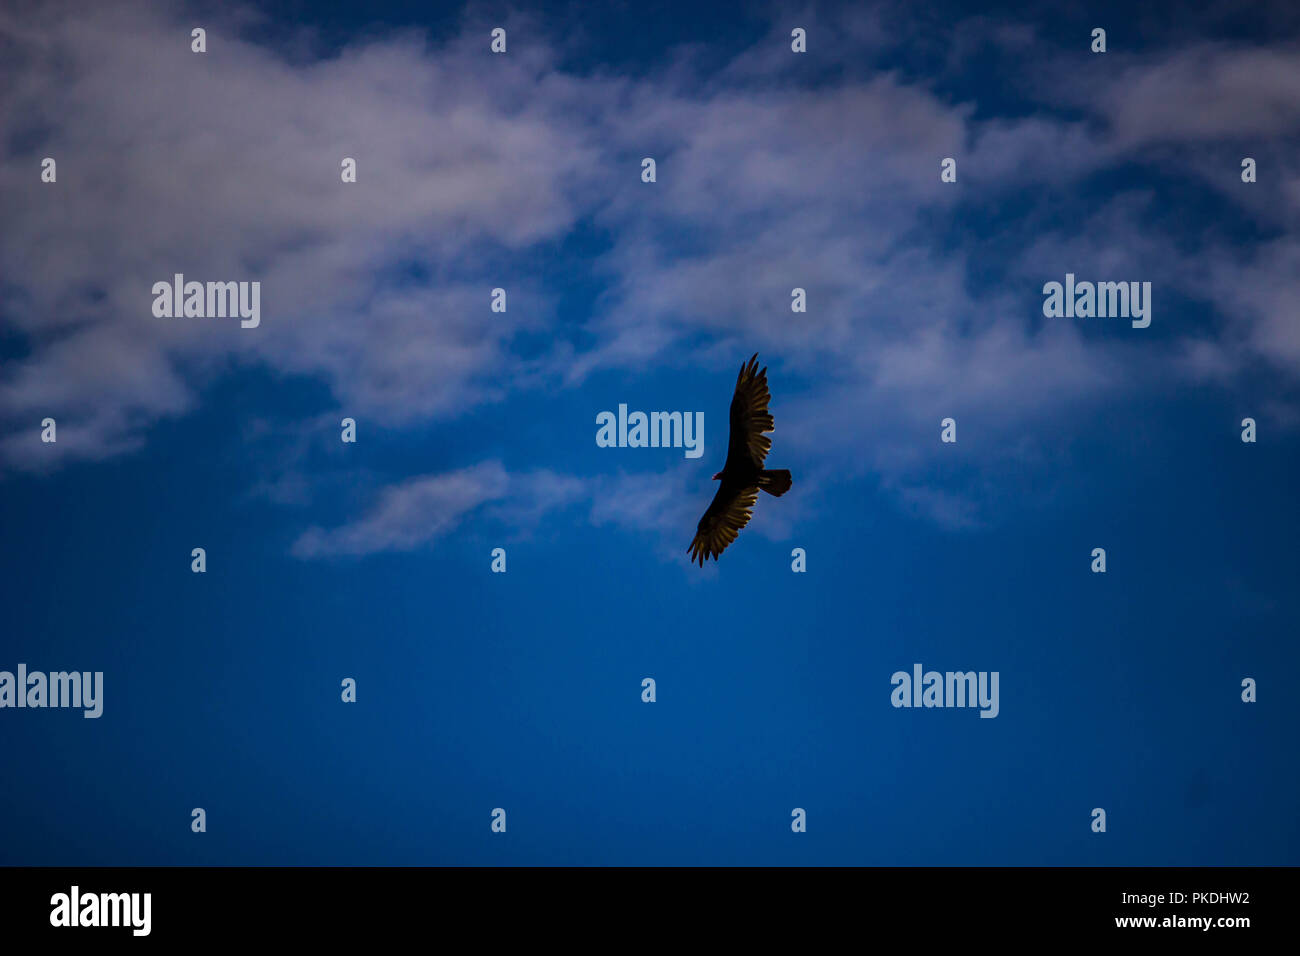 Hawk flying in a blue sky Stock Photo